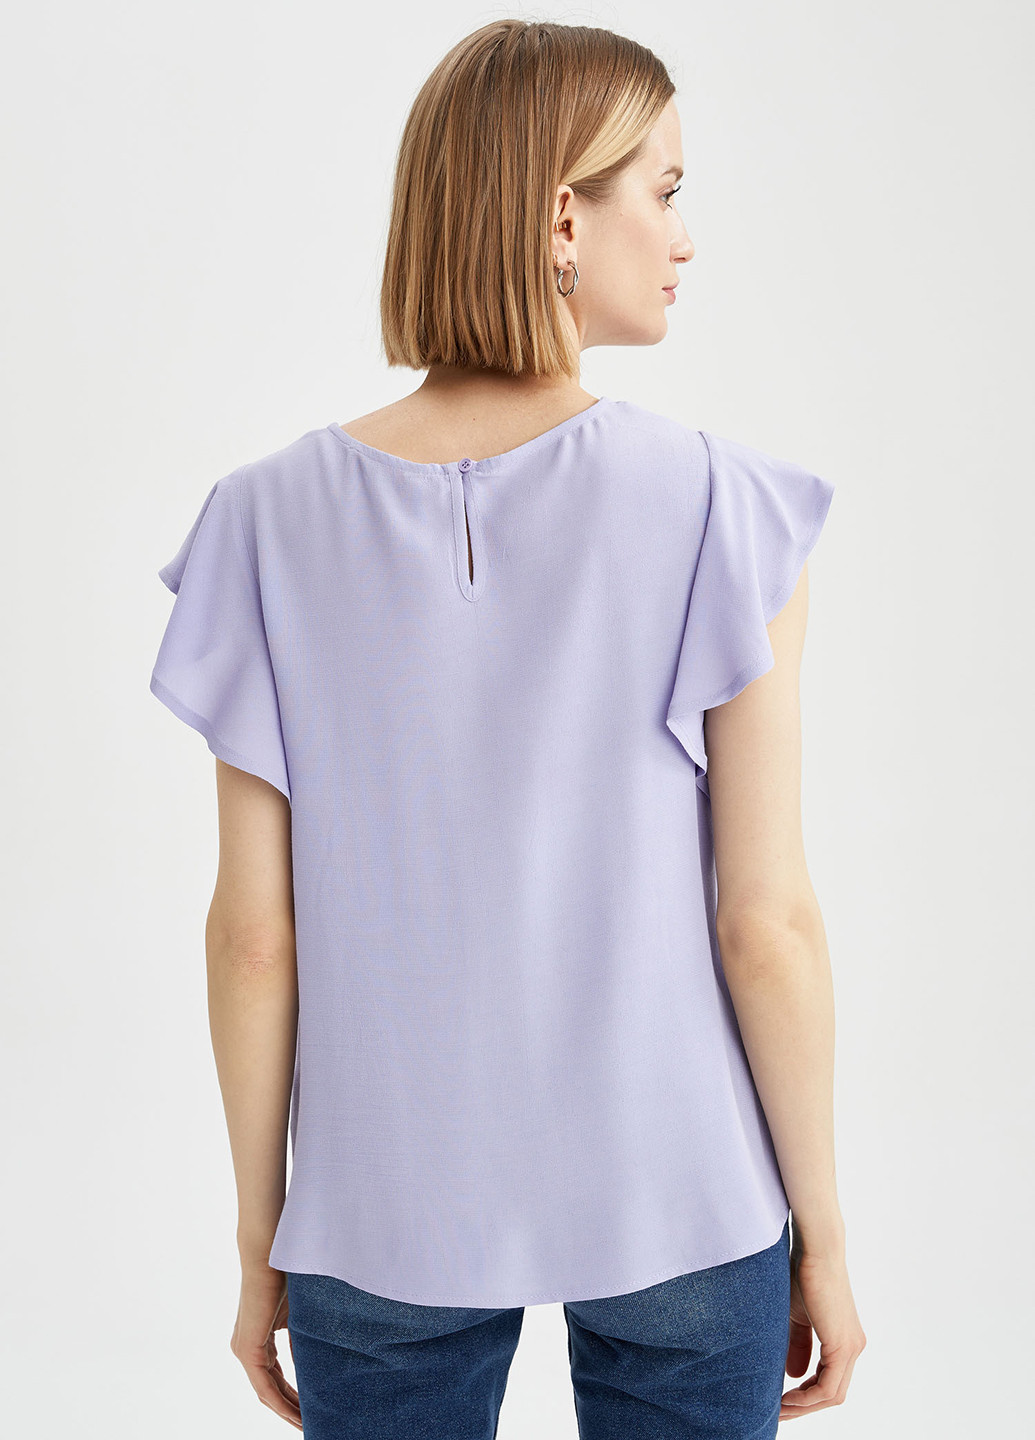 Светло-лиловая летняя блуза DeFacto